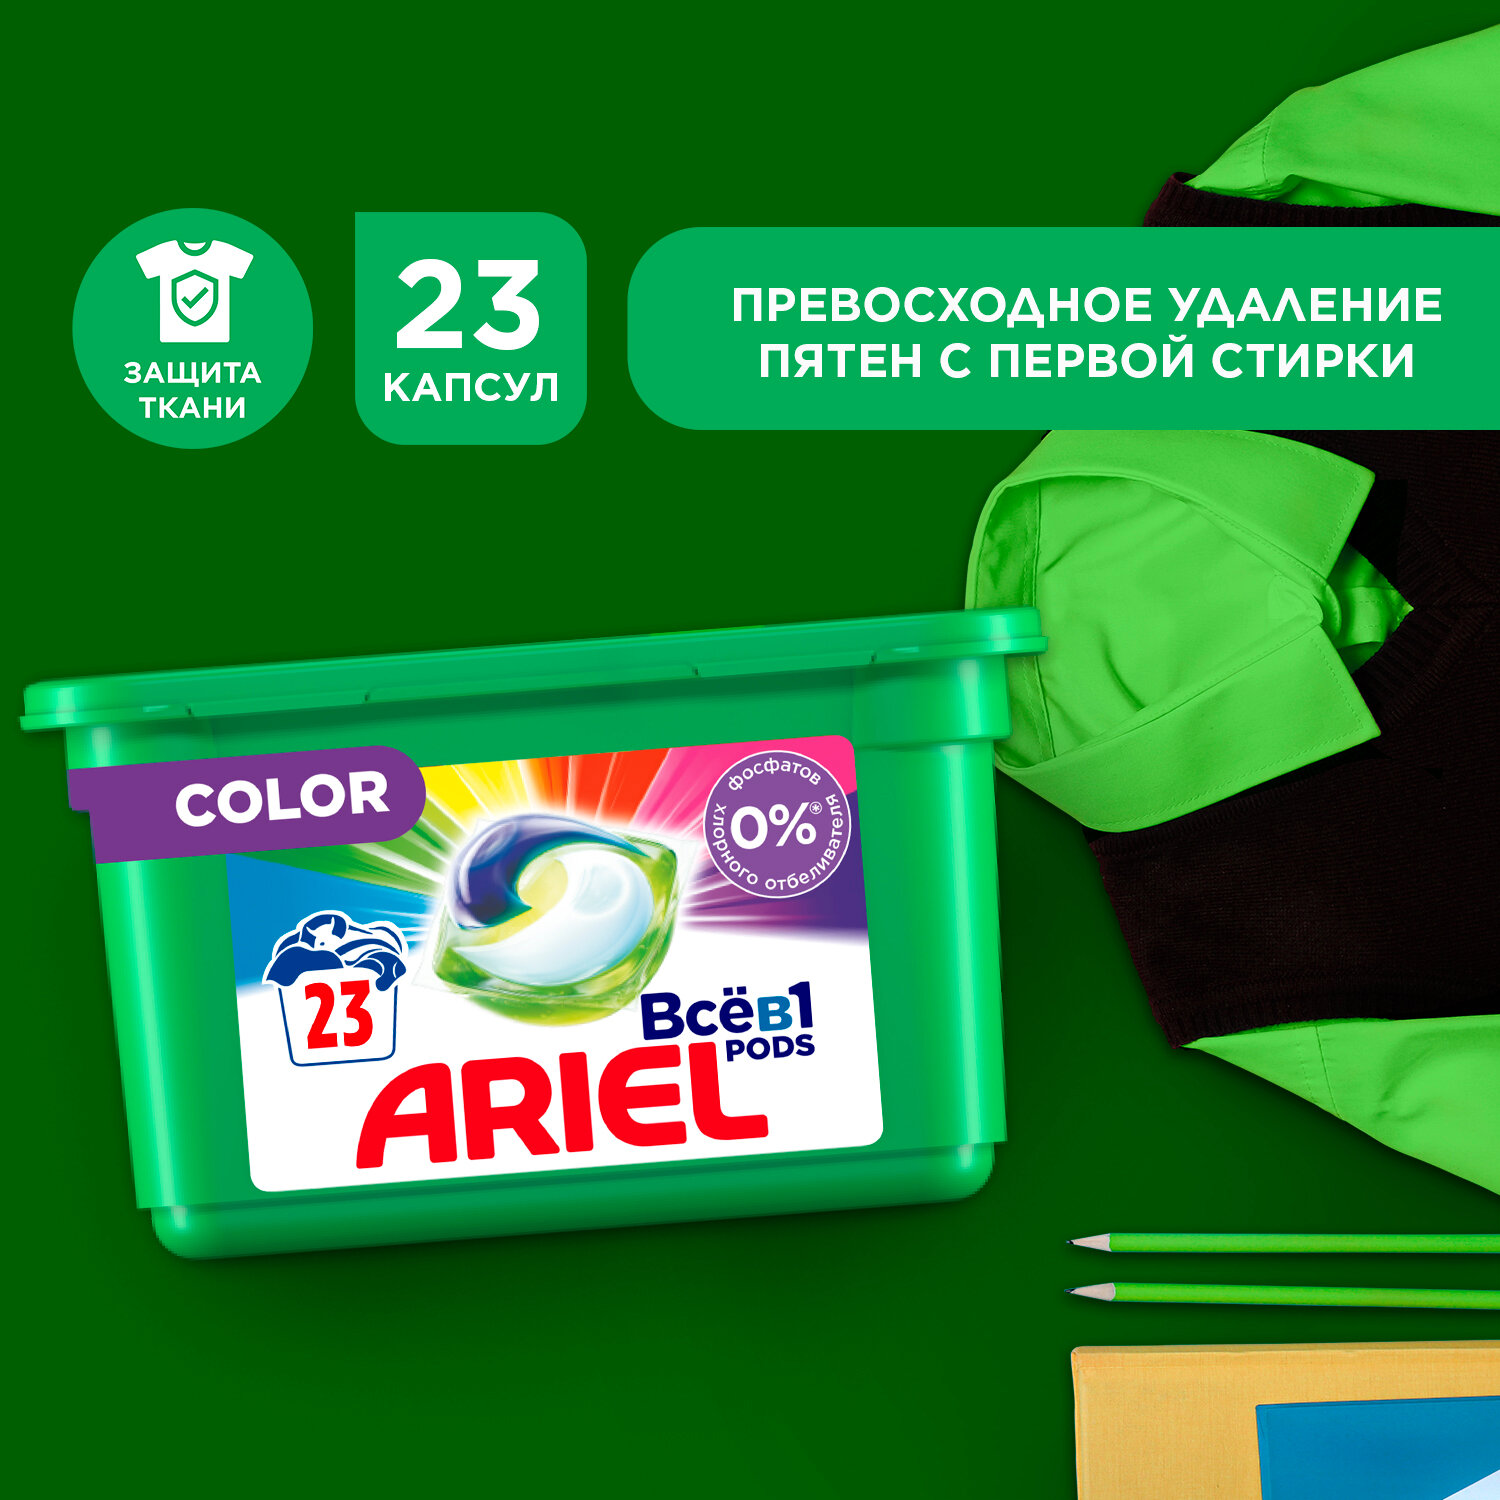 Ariel Pods --1 Color    23.